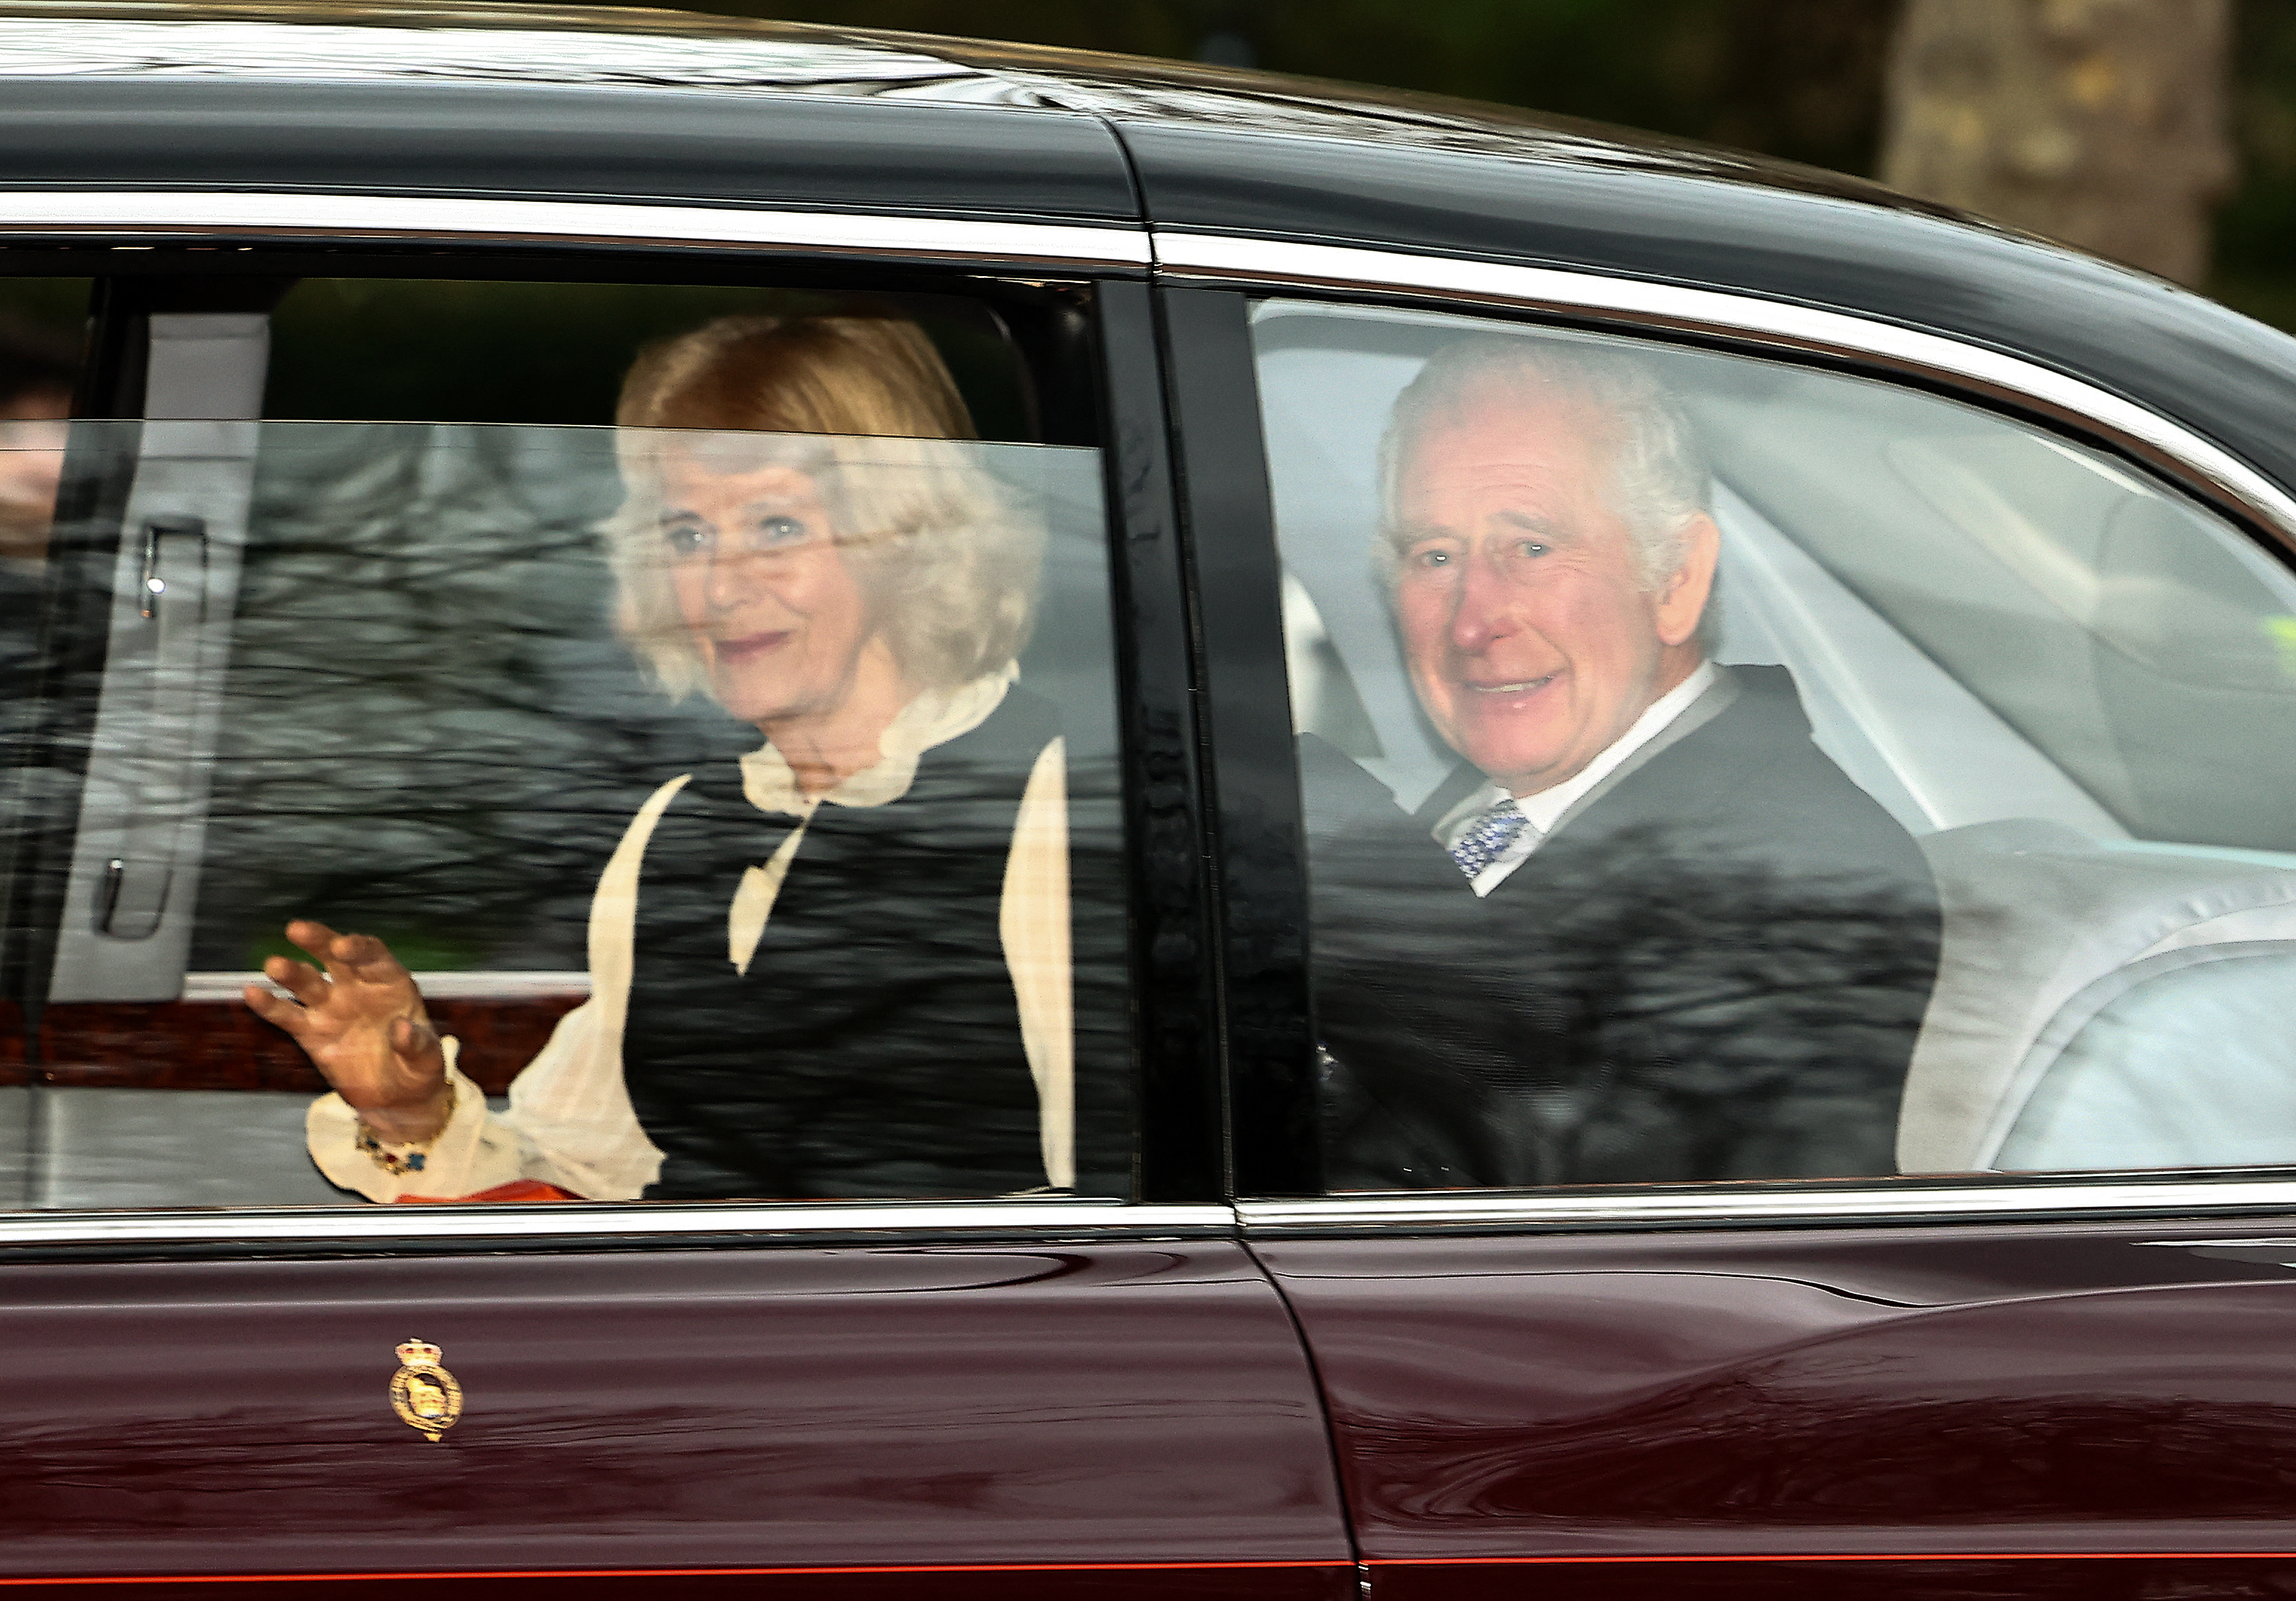 Camilla et Charles ont quitté Clarence House à Londres après la visite d'Harry, la rupture de la reine avec son beau-fils étant prétendument la raison pour laquelle il n'a eu qu'une demi-heure avec son père, selon un expert